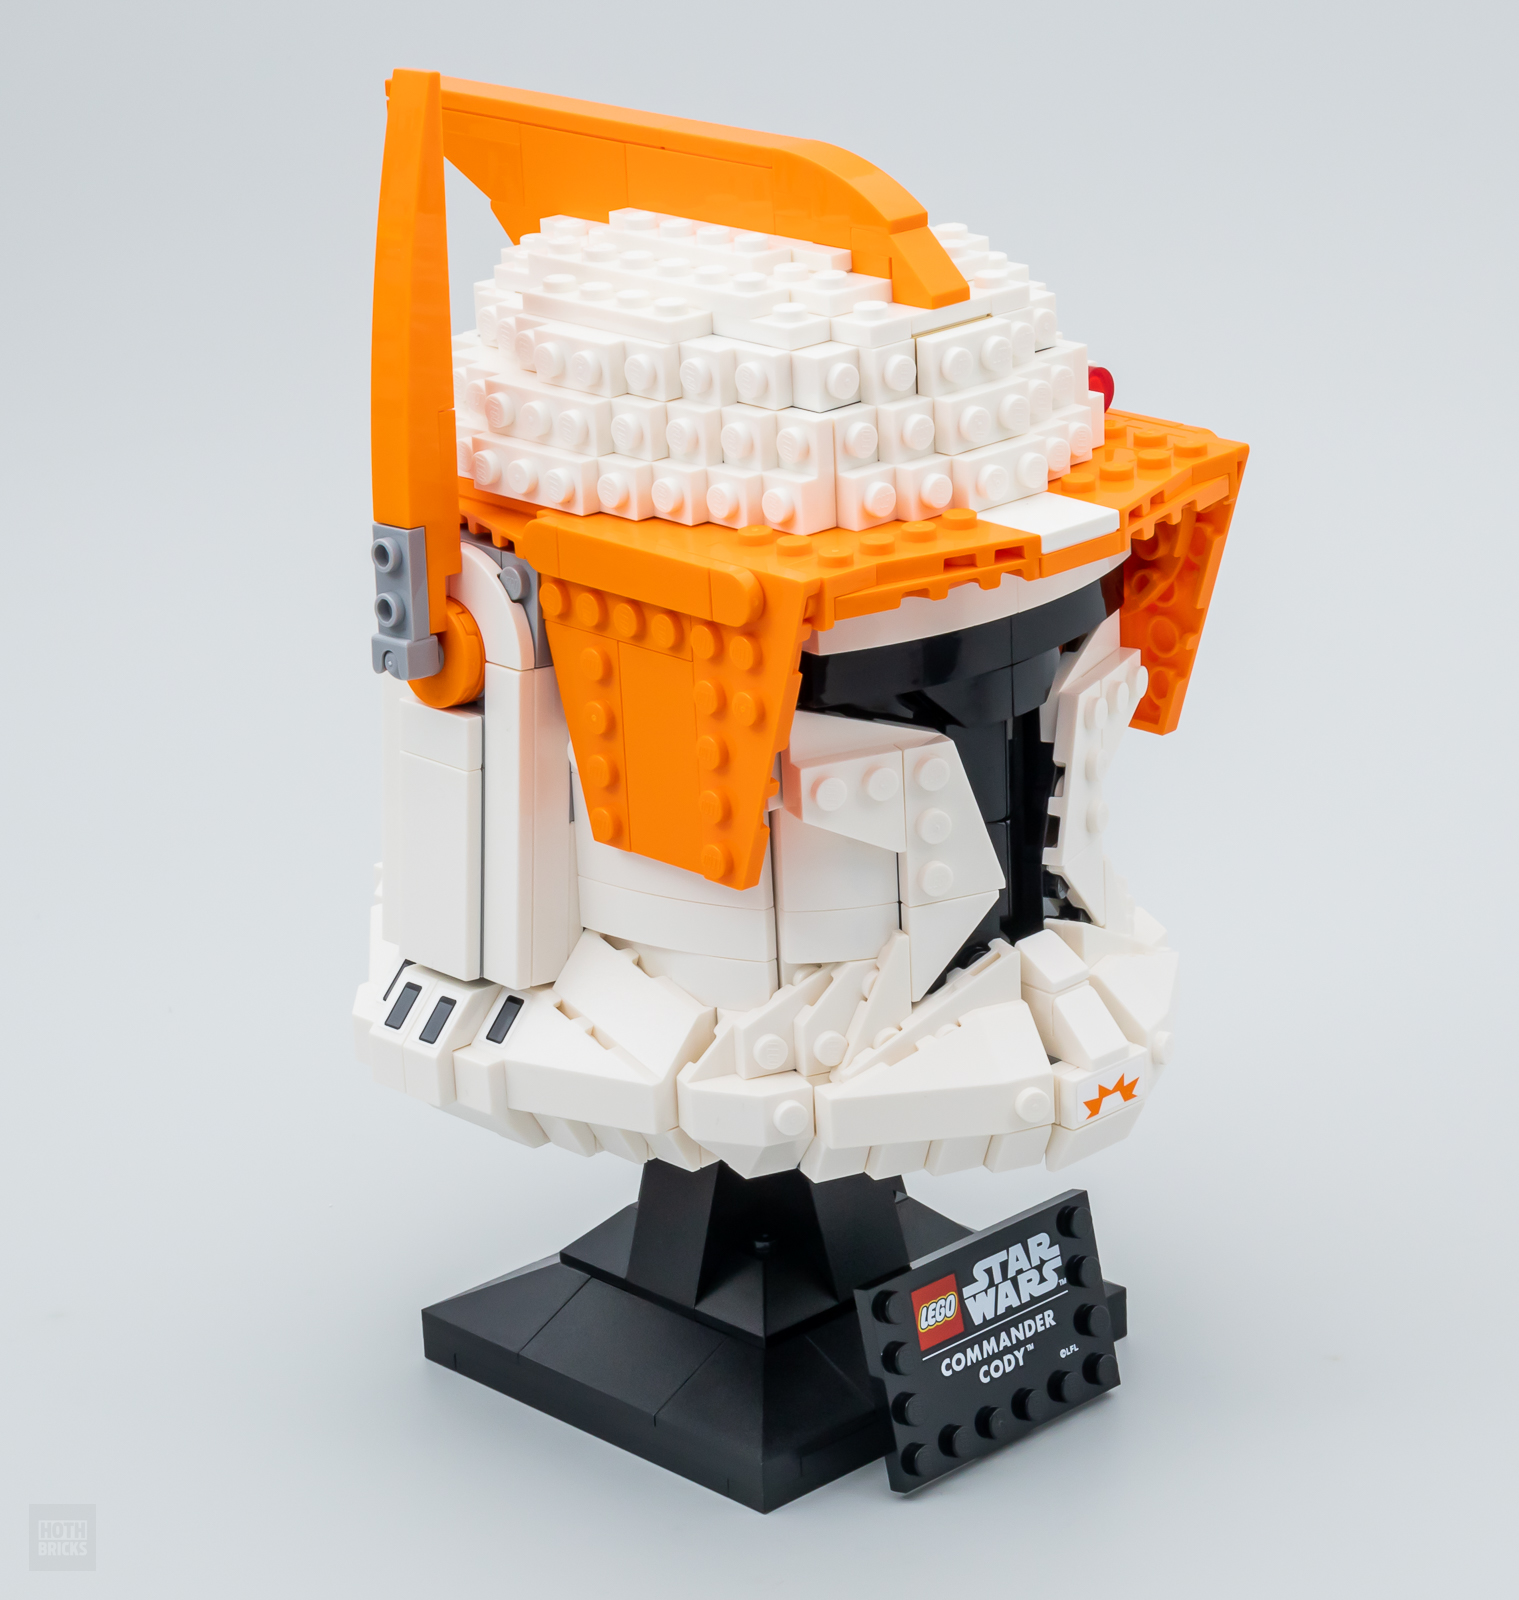 Lego Star Wars - Le casque du Commandant clone (75350)